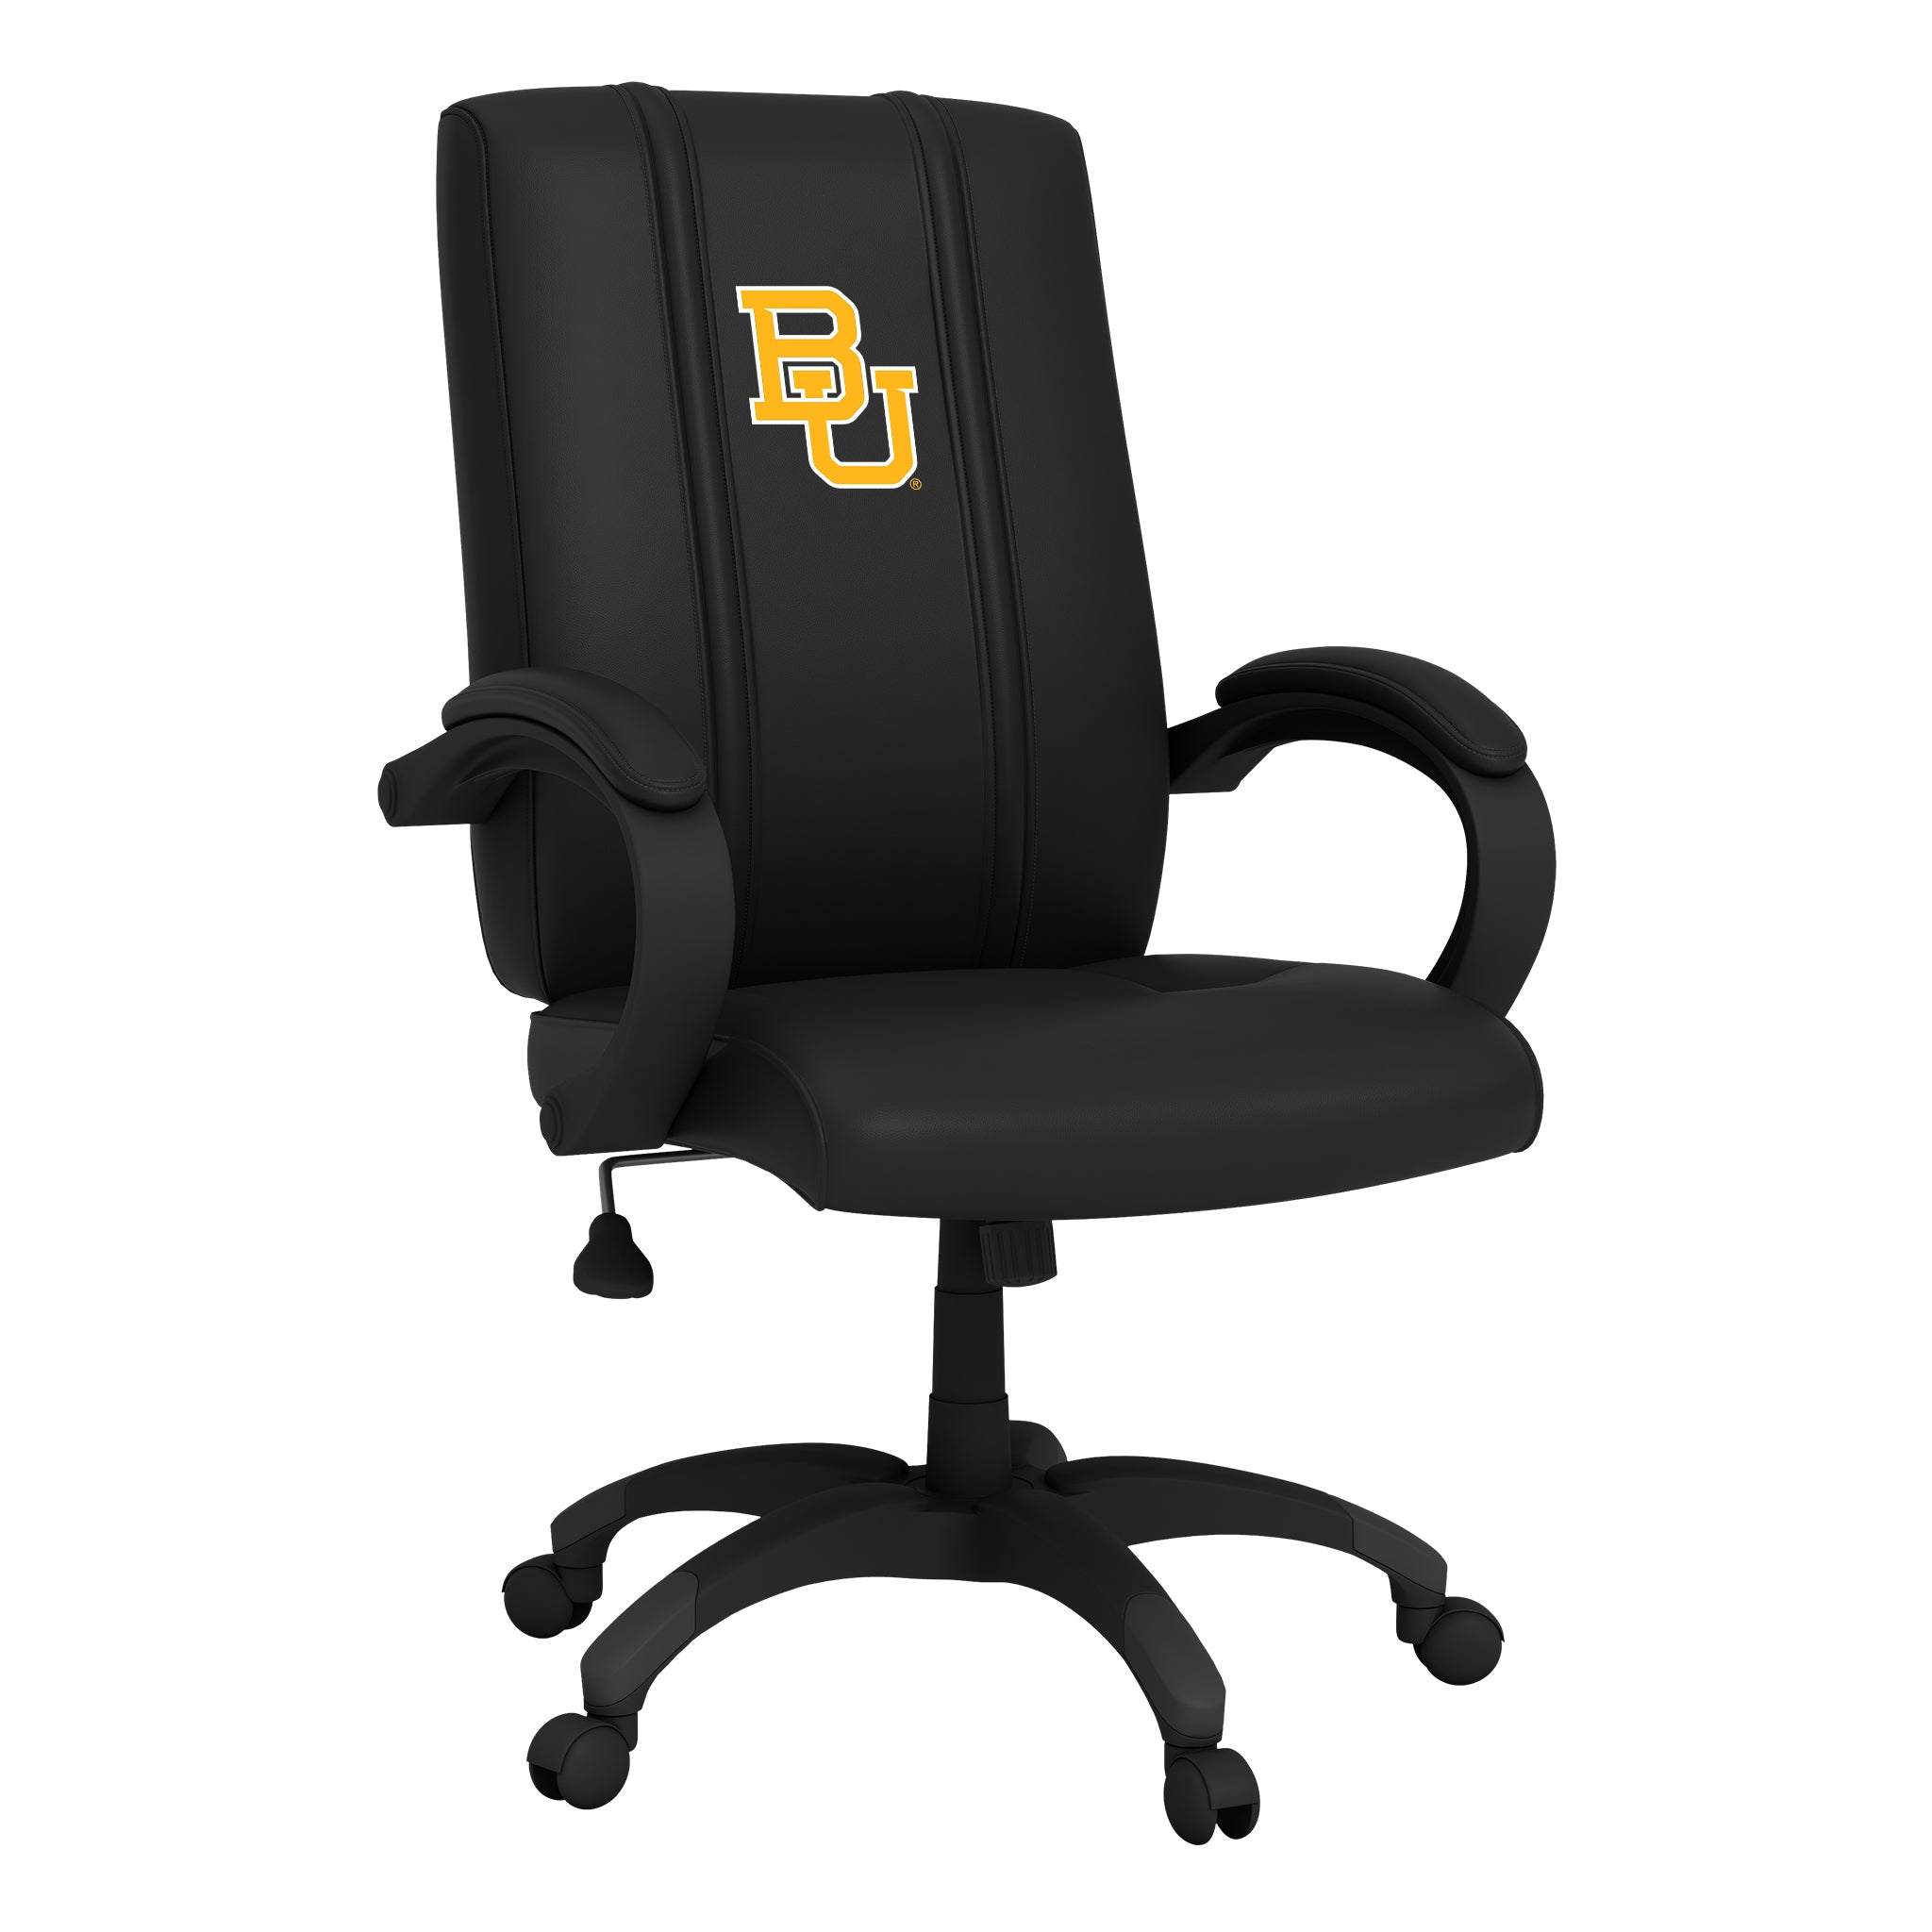 Baylor Bears Office Chair 1000 with Baylor Bears Logo